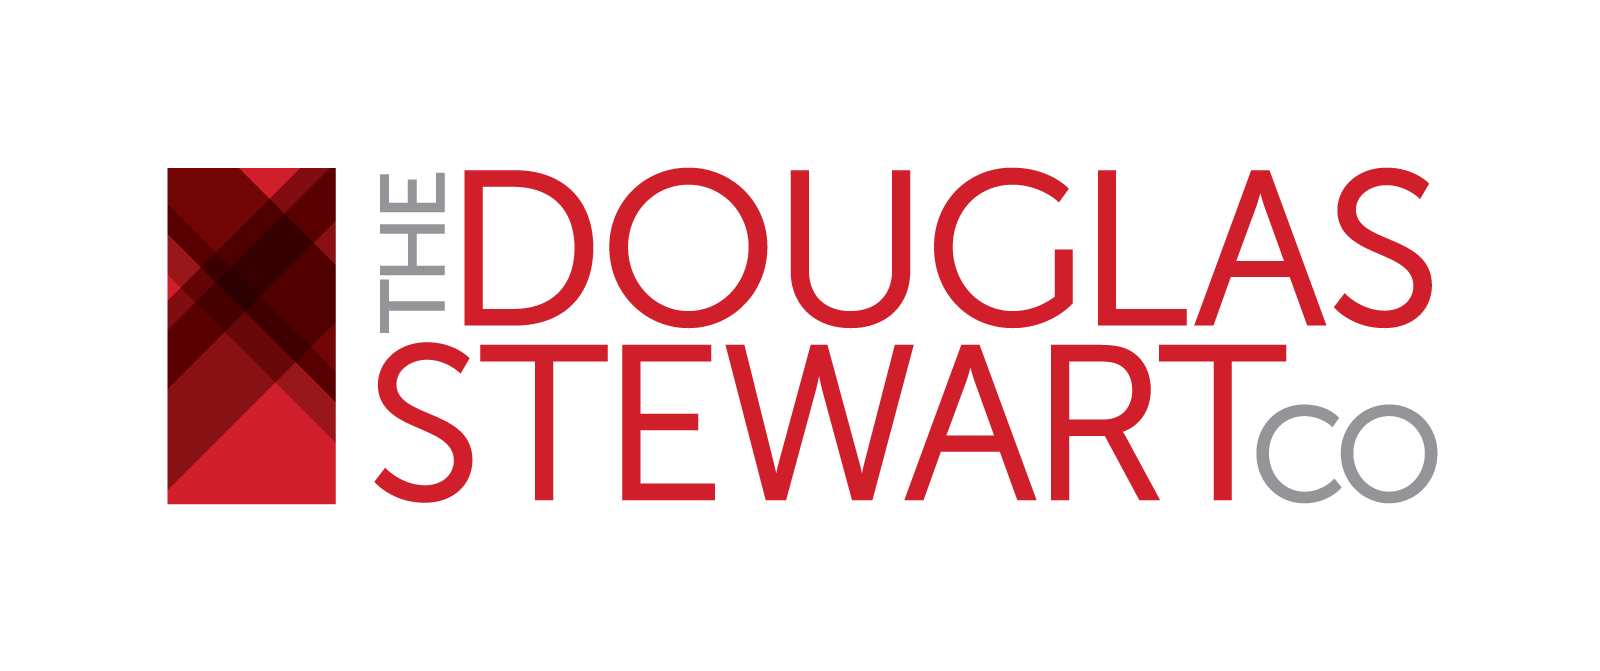 The Douglas Stewart Co. logo